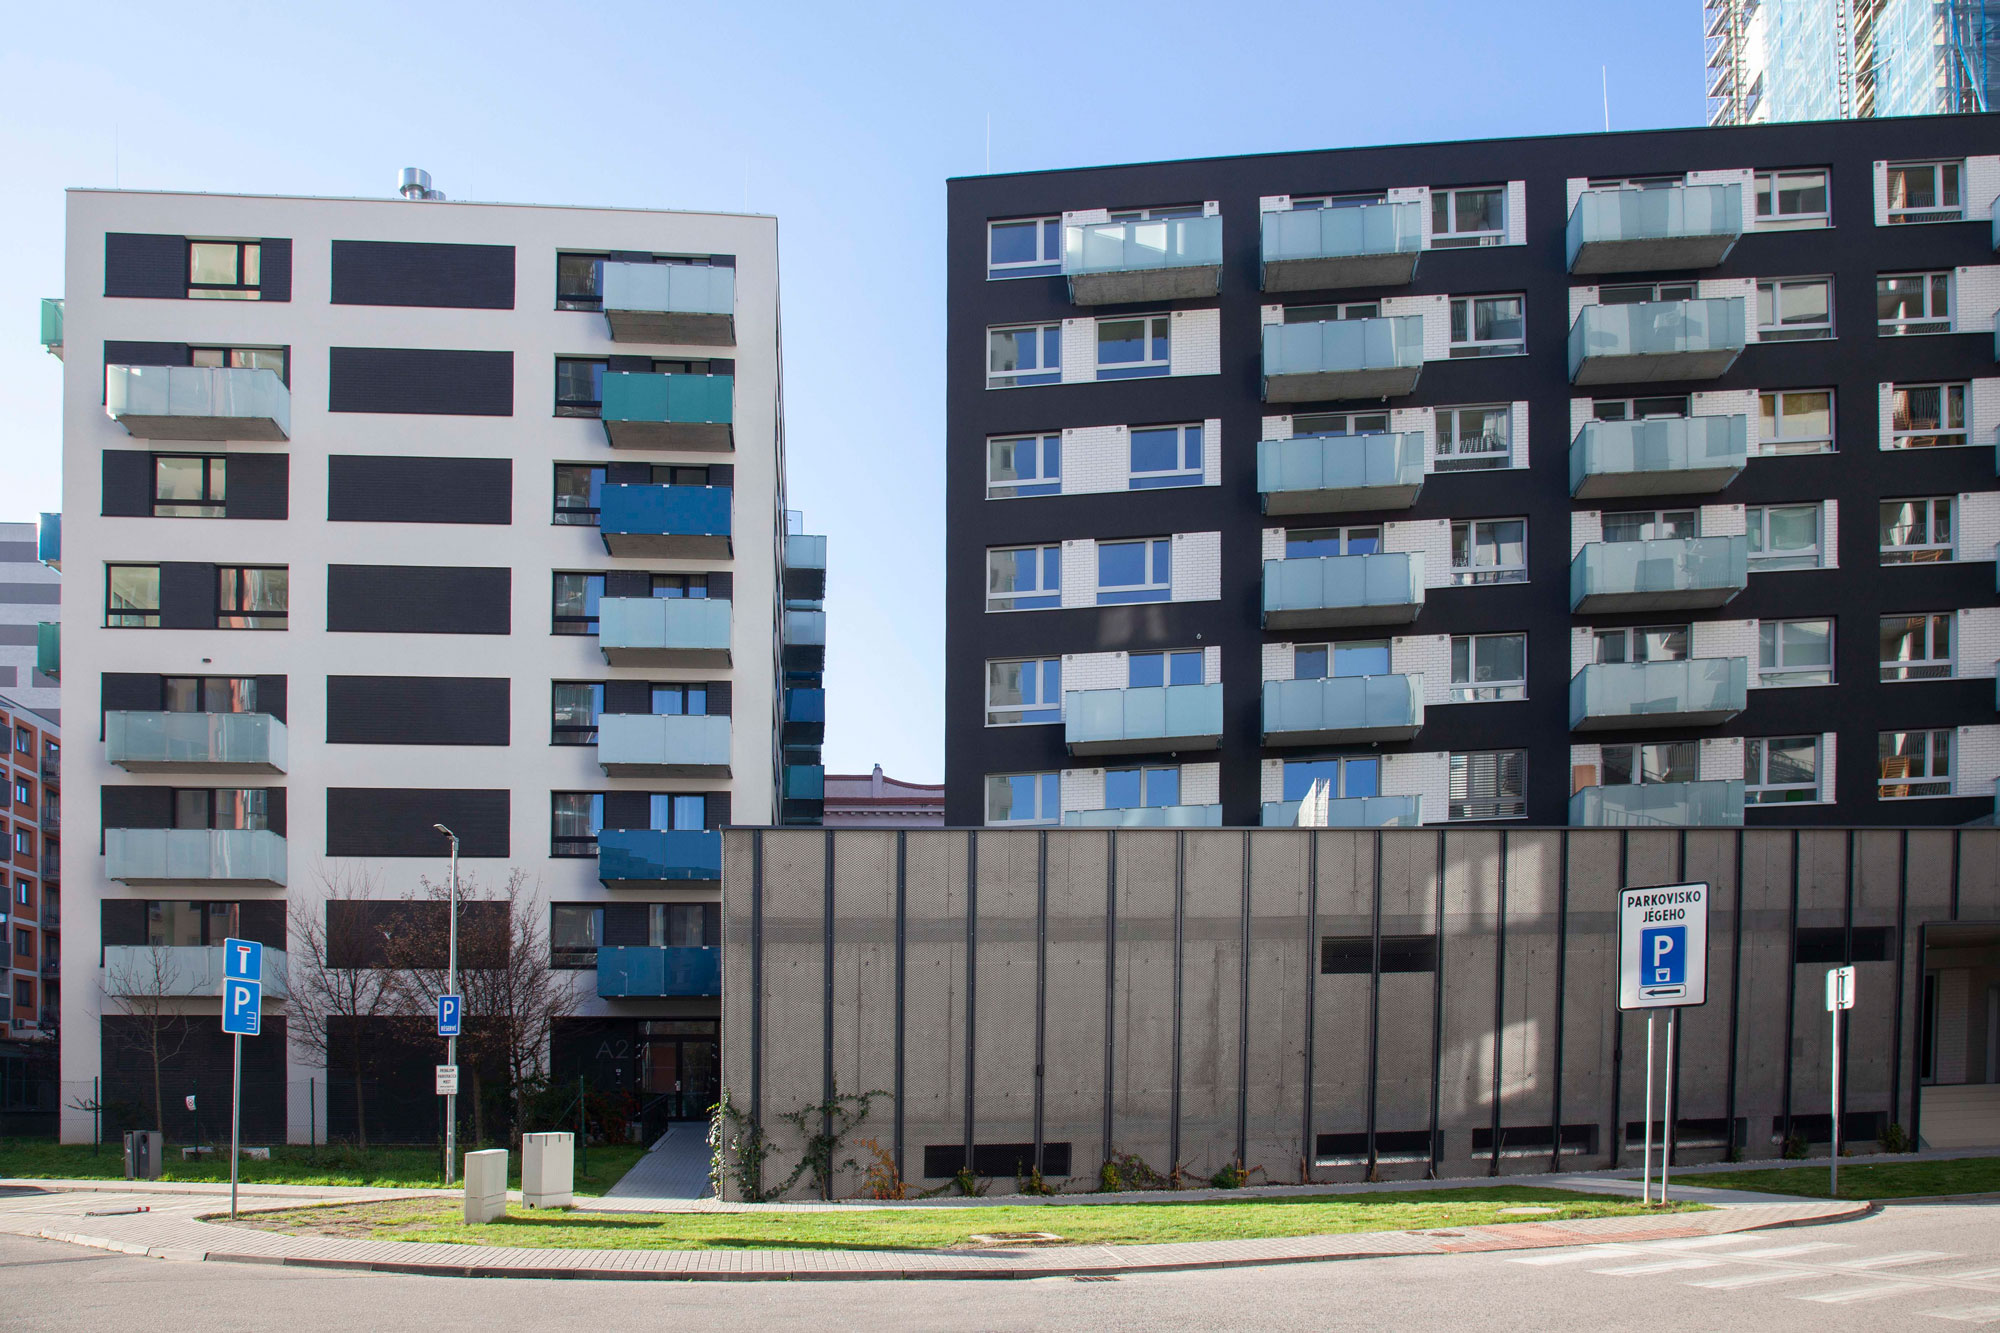 Zwei moderne Mehrfamilienhäuser mit weißen und dunklen Fassaden und Balkonen vor klarem Himmel.